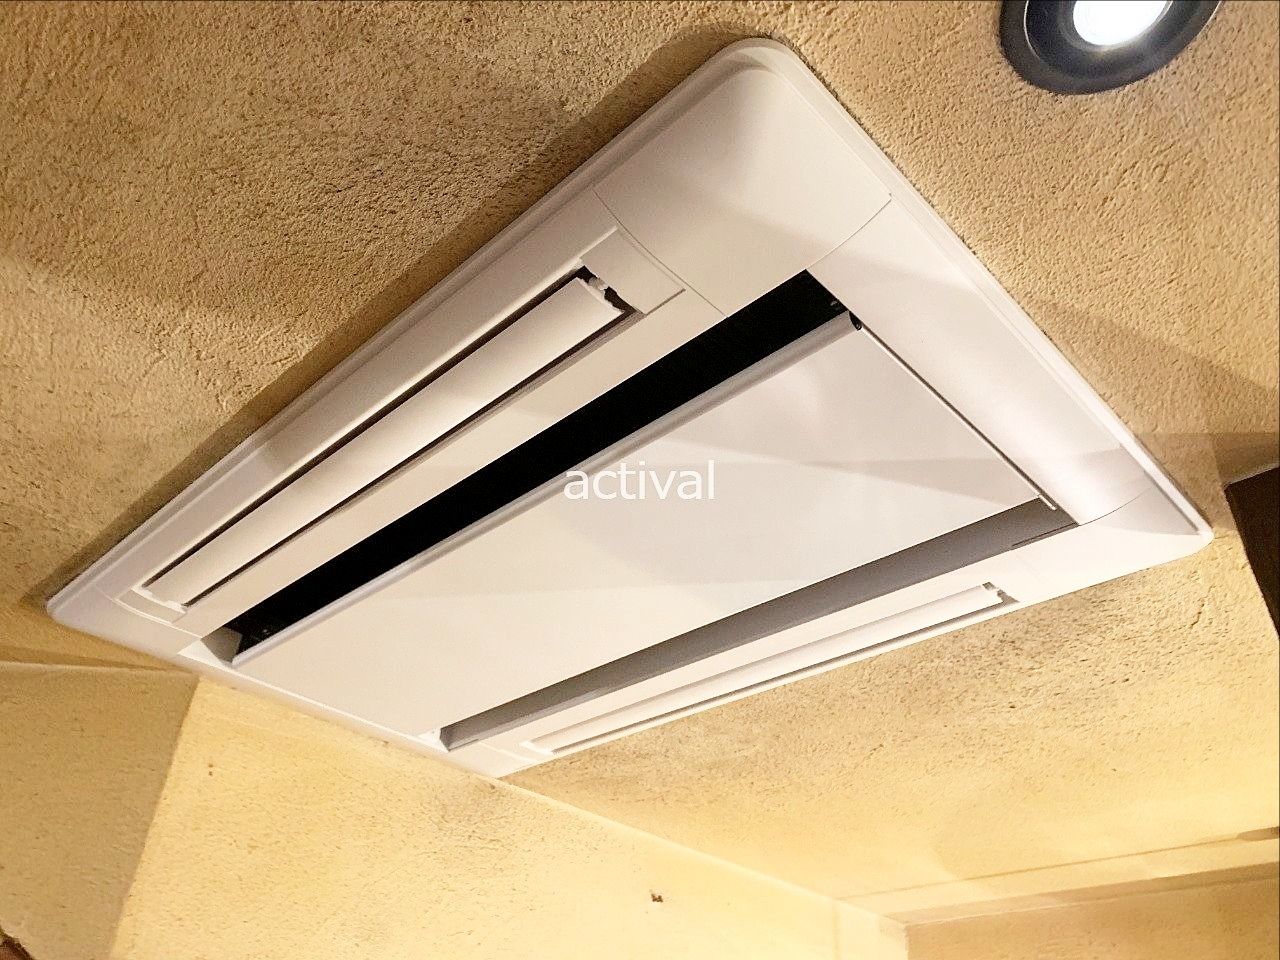 天井埋め込み型エアコンの取り付けが完了しました。